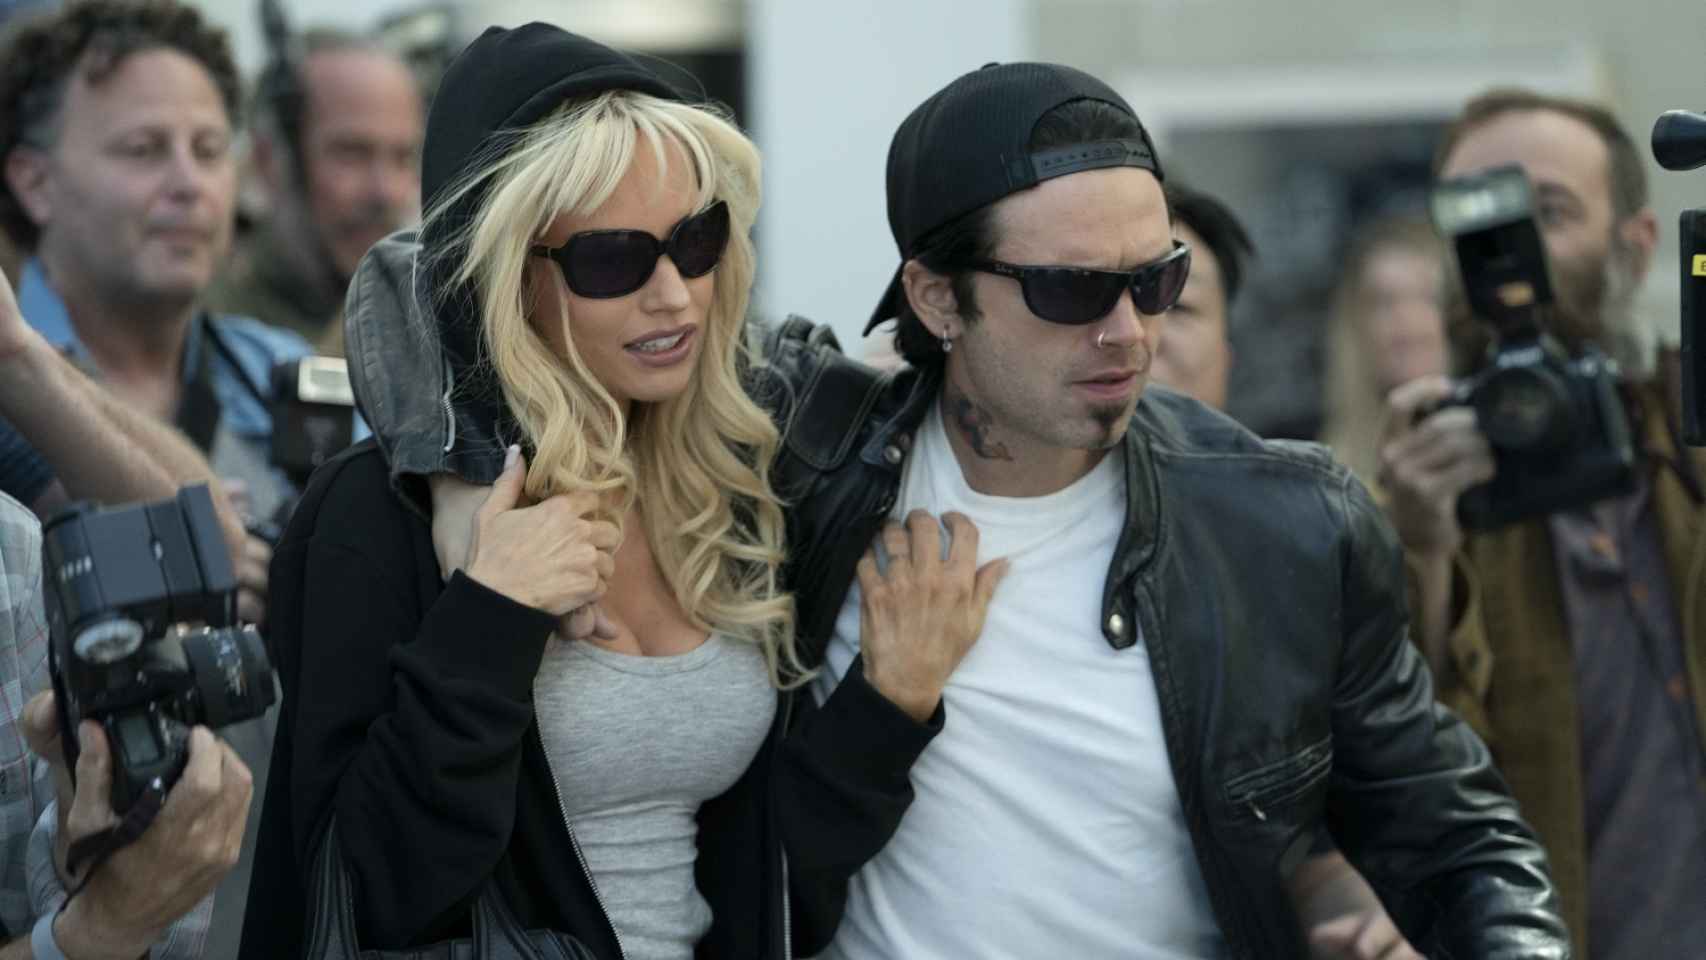 La serie se centra en la relación entre Pamela Anderson y Tommy Lee